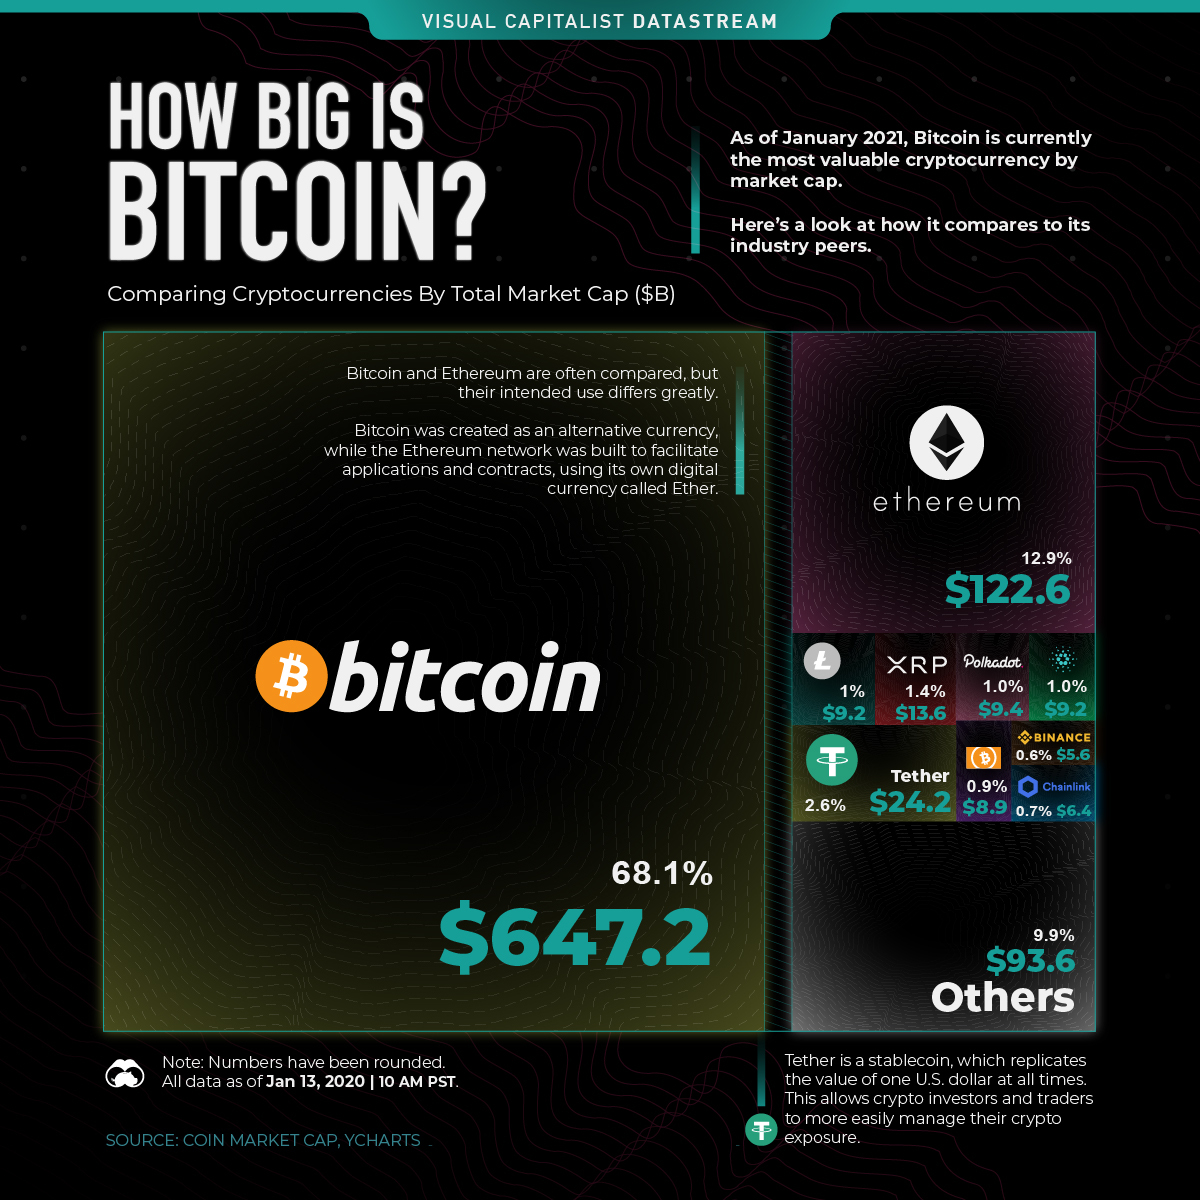 Bitcoin (BTC) vs Ethereum (ETH) - Detailed Charts Comparison